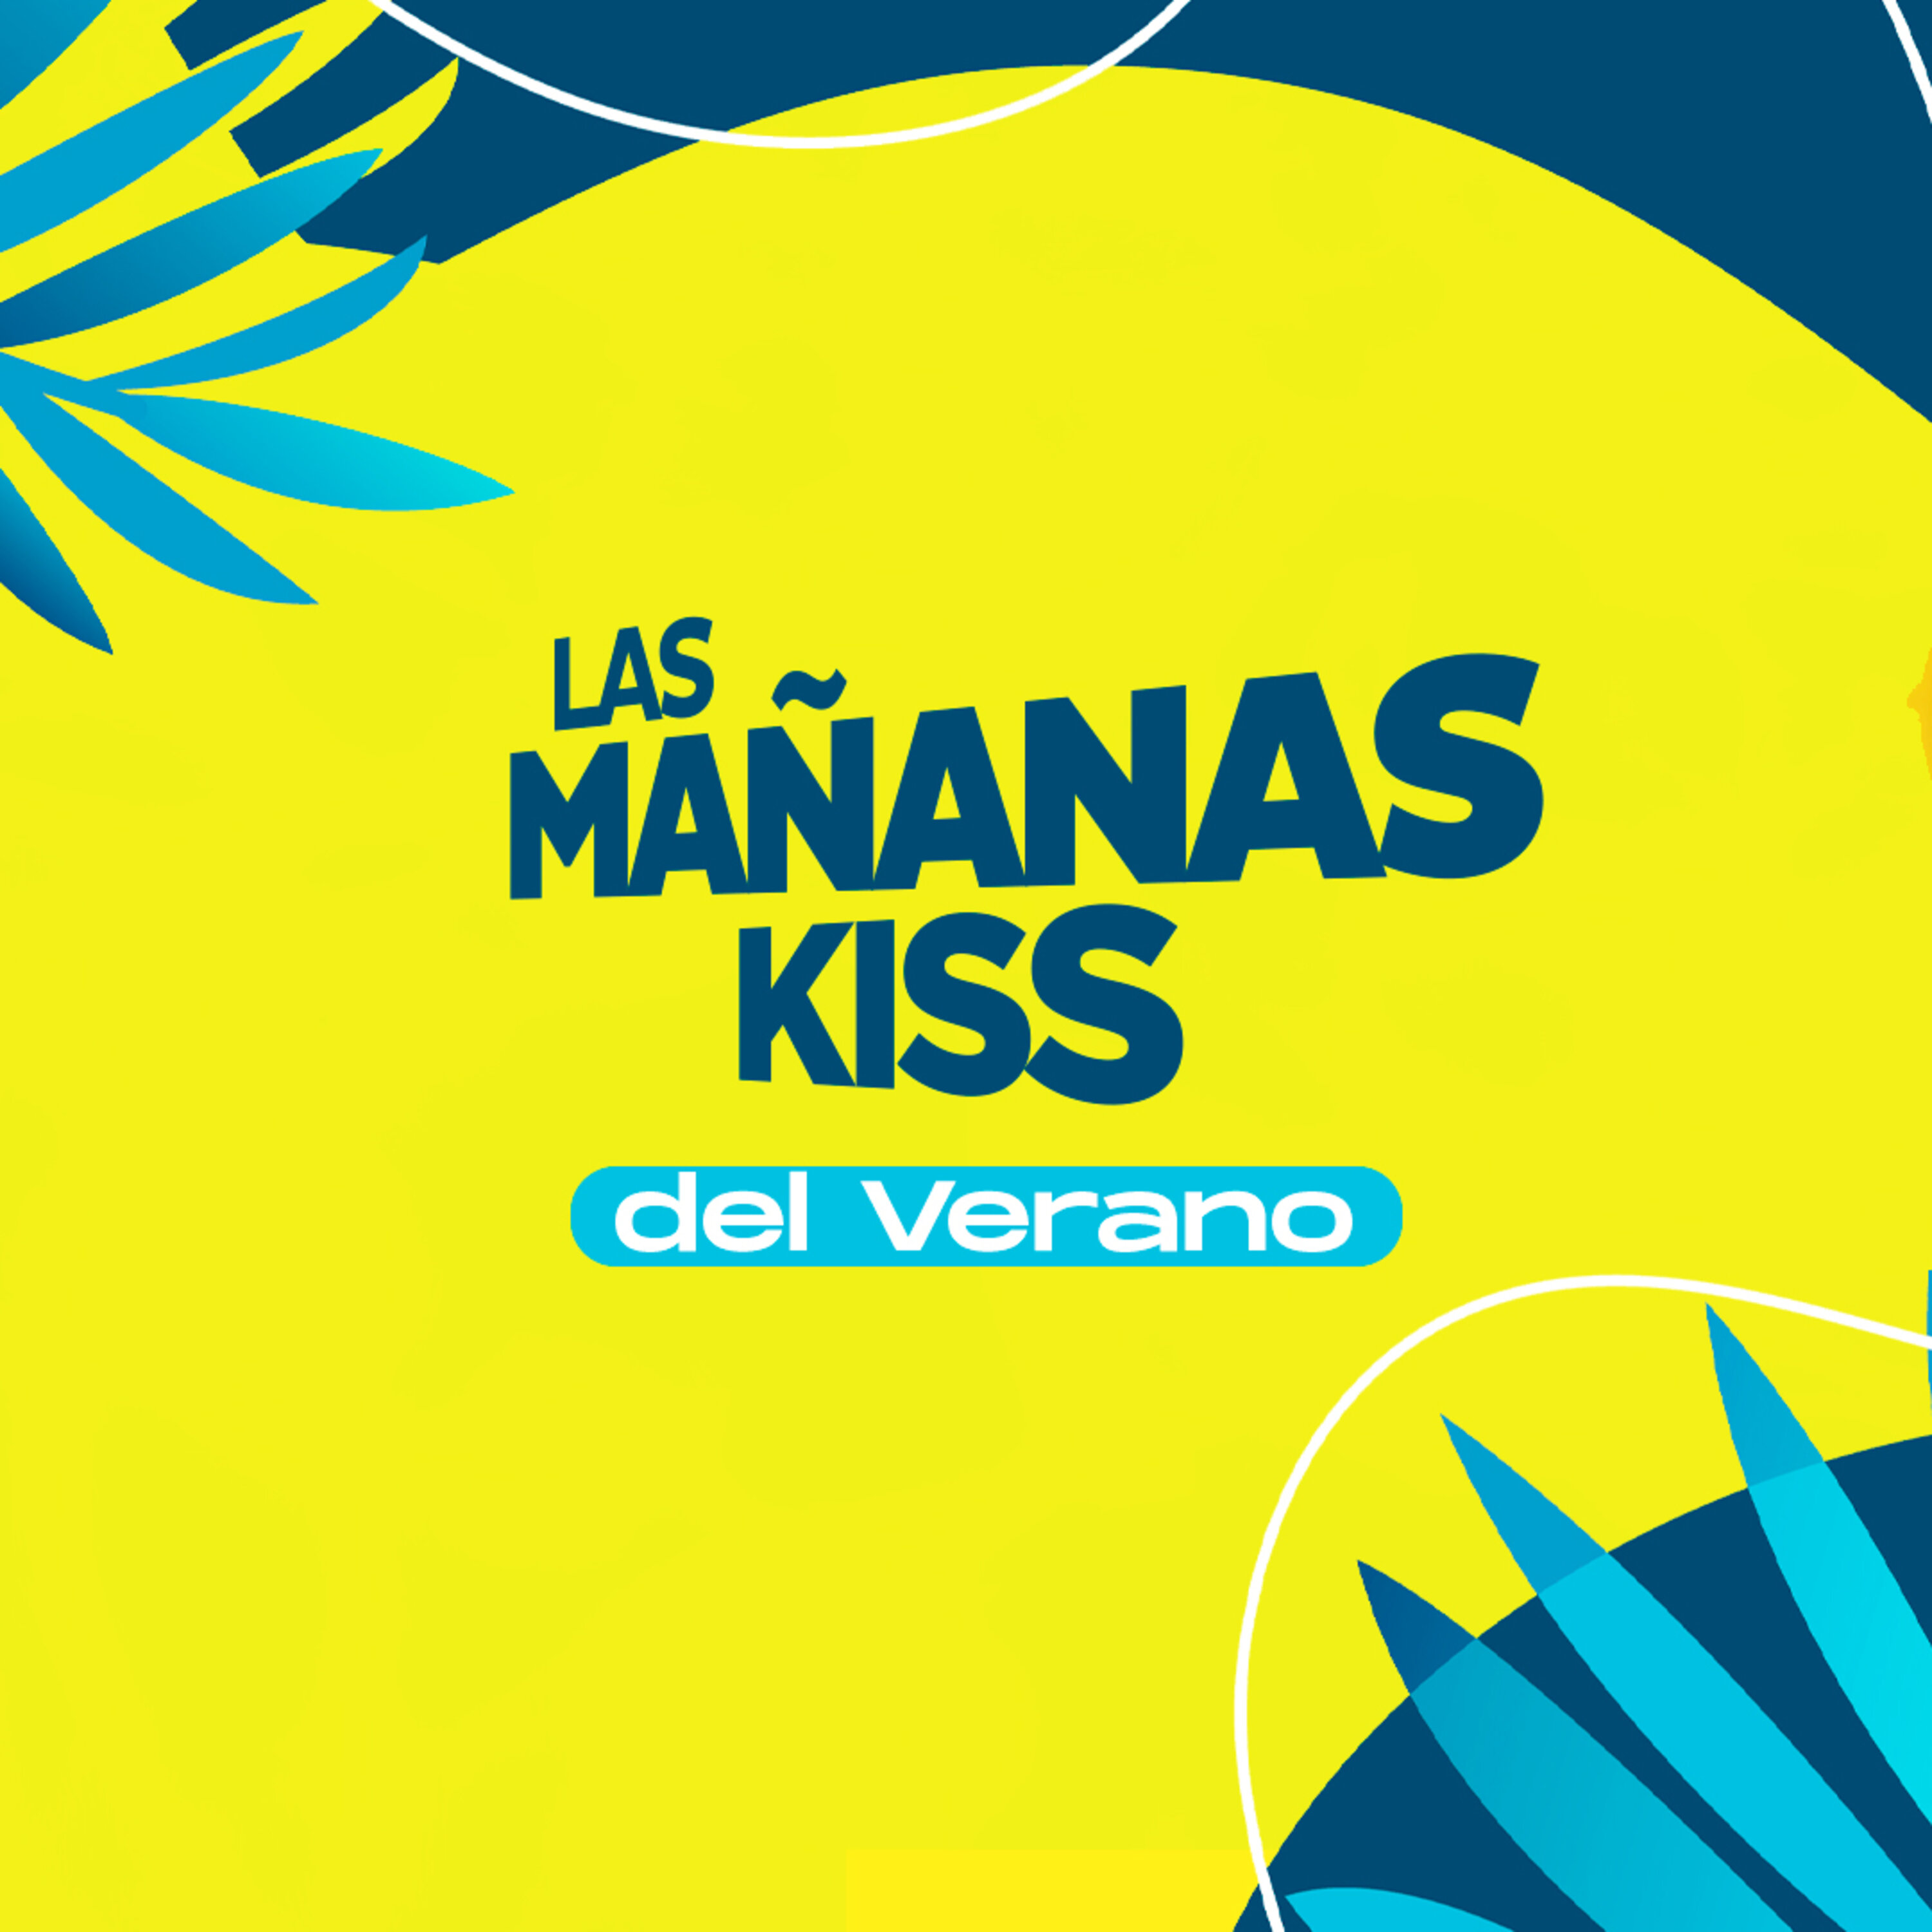 Las Mañanas KISS del Verano (24/08/2022 - 08-09h)